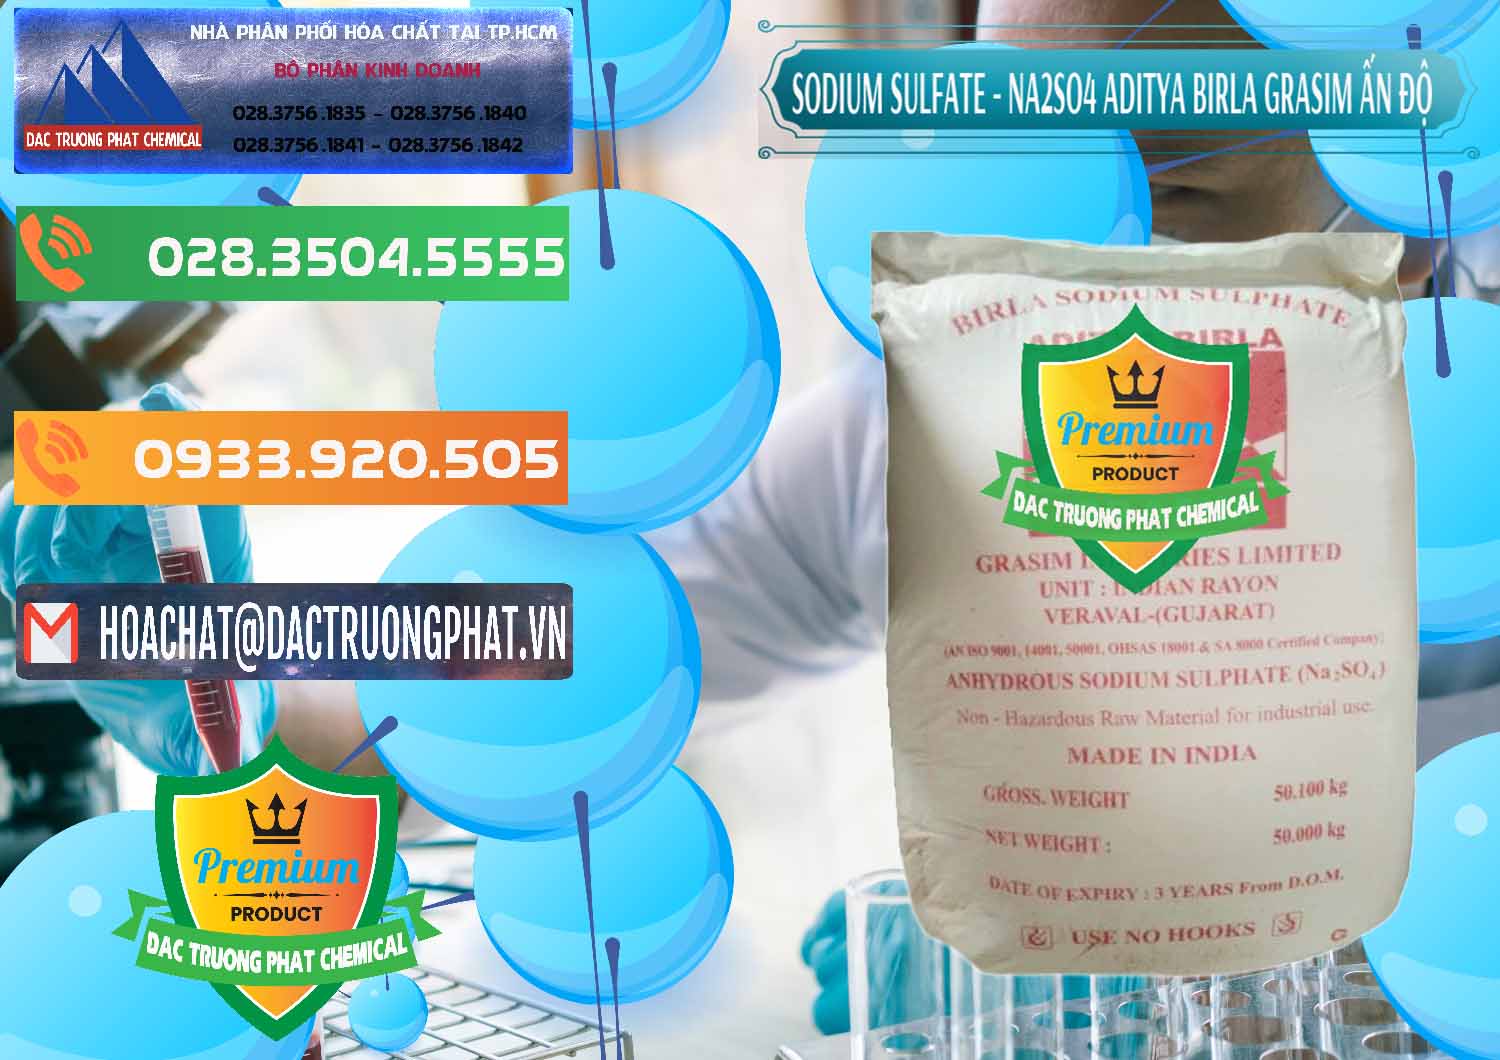 Đơn vị kinh doanh ( bán ) Sodium Sulphate - Muối Sunfat Na2SO4 Grasim Ấn Độ India - 0356 - Cty bán & cung cấp hóa chất tại TP.HCM - hoachatxulynuoc.com.vn